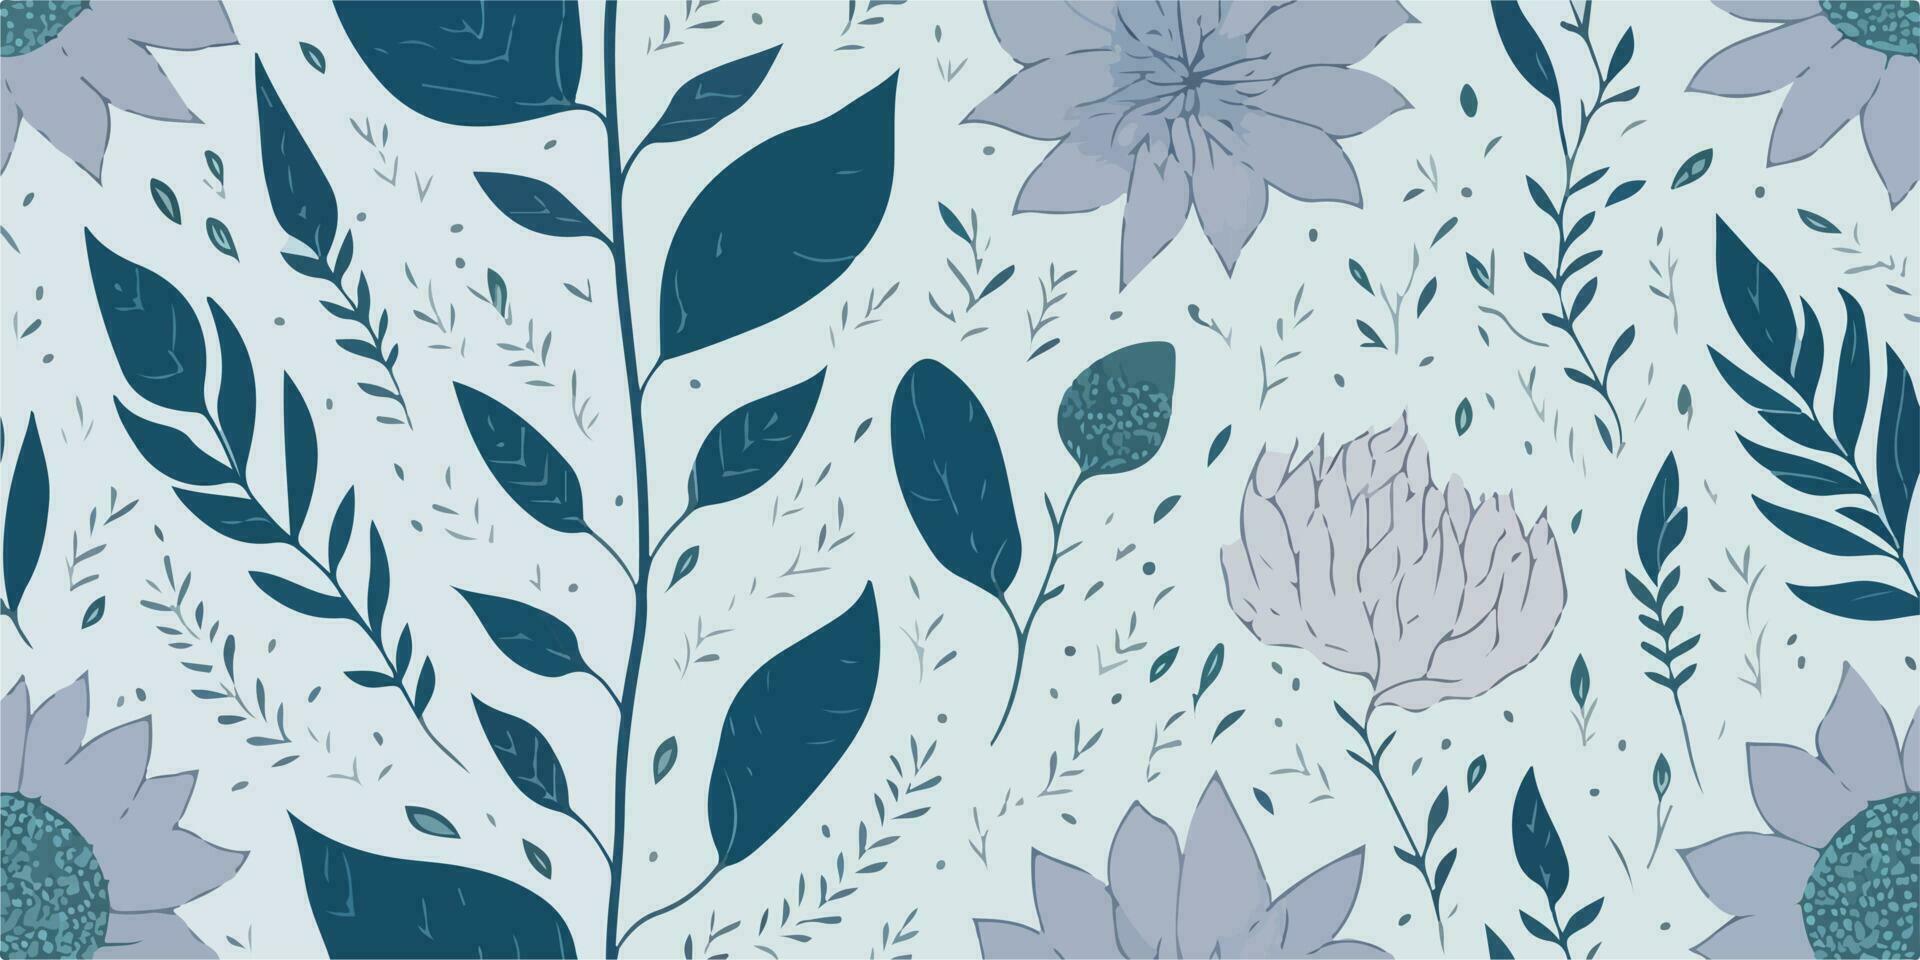 botânico serenidade, tranquilo vetor ilustração do sereno flor padrões